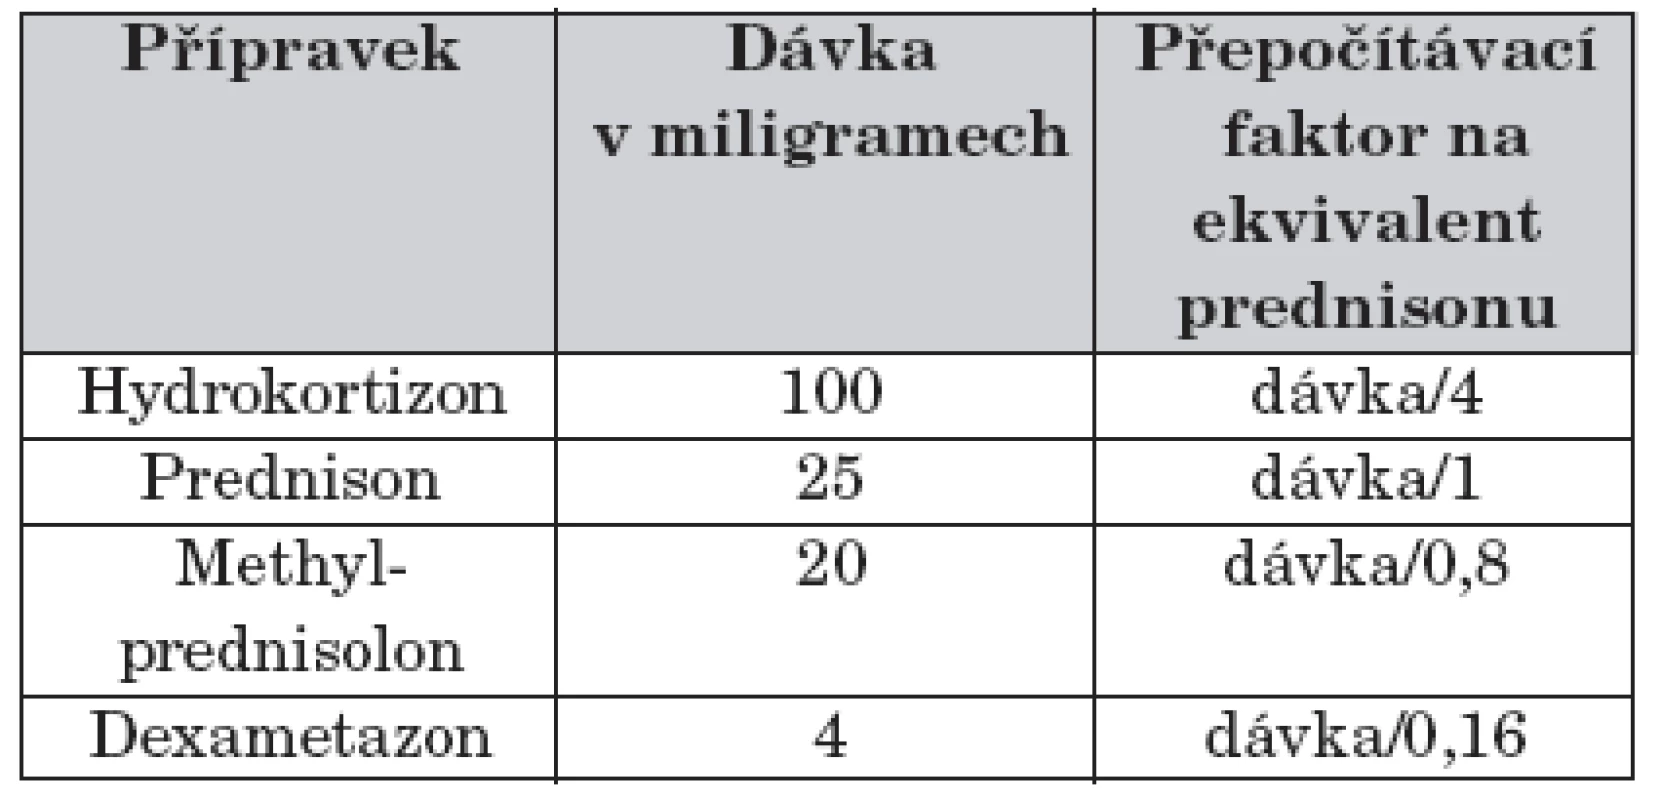 Tabulka pro kalkulaci protizánětlivé dávky glukokortikoidů ve formě ekvivalentu prednisonu [38].
